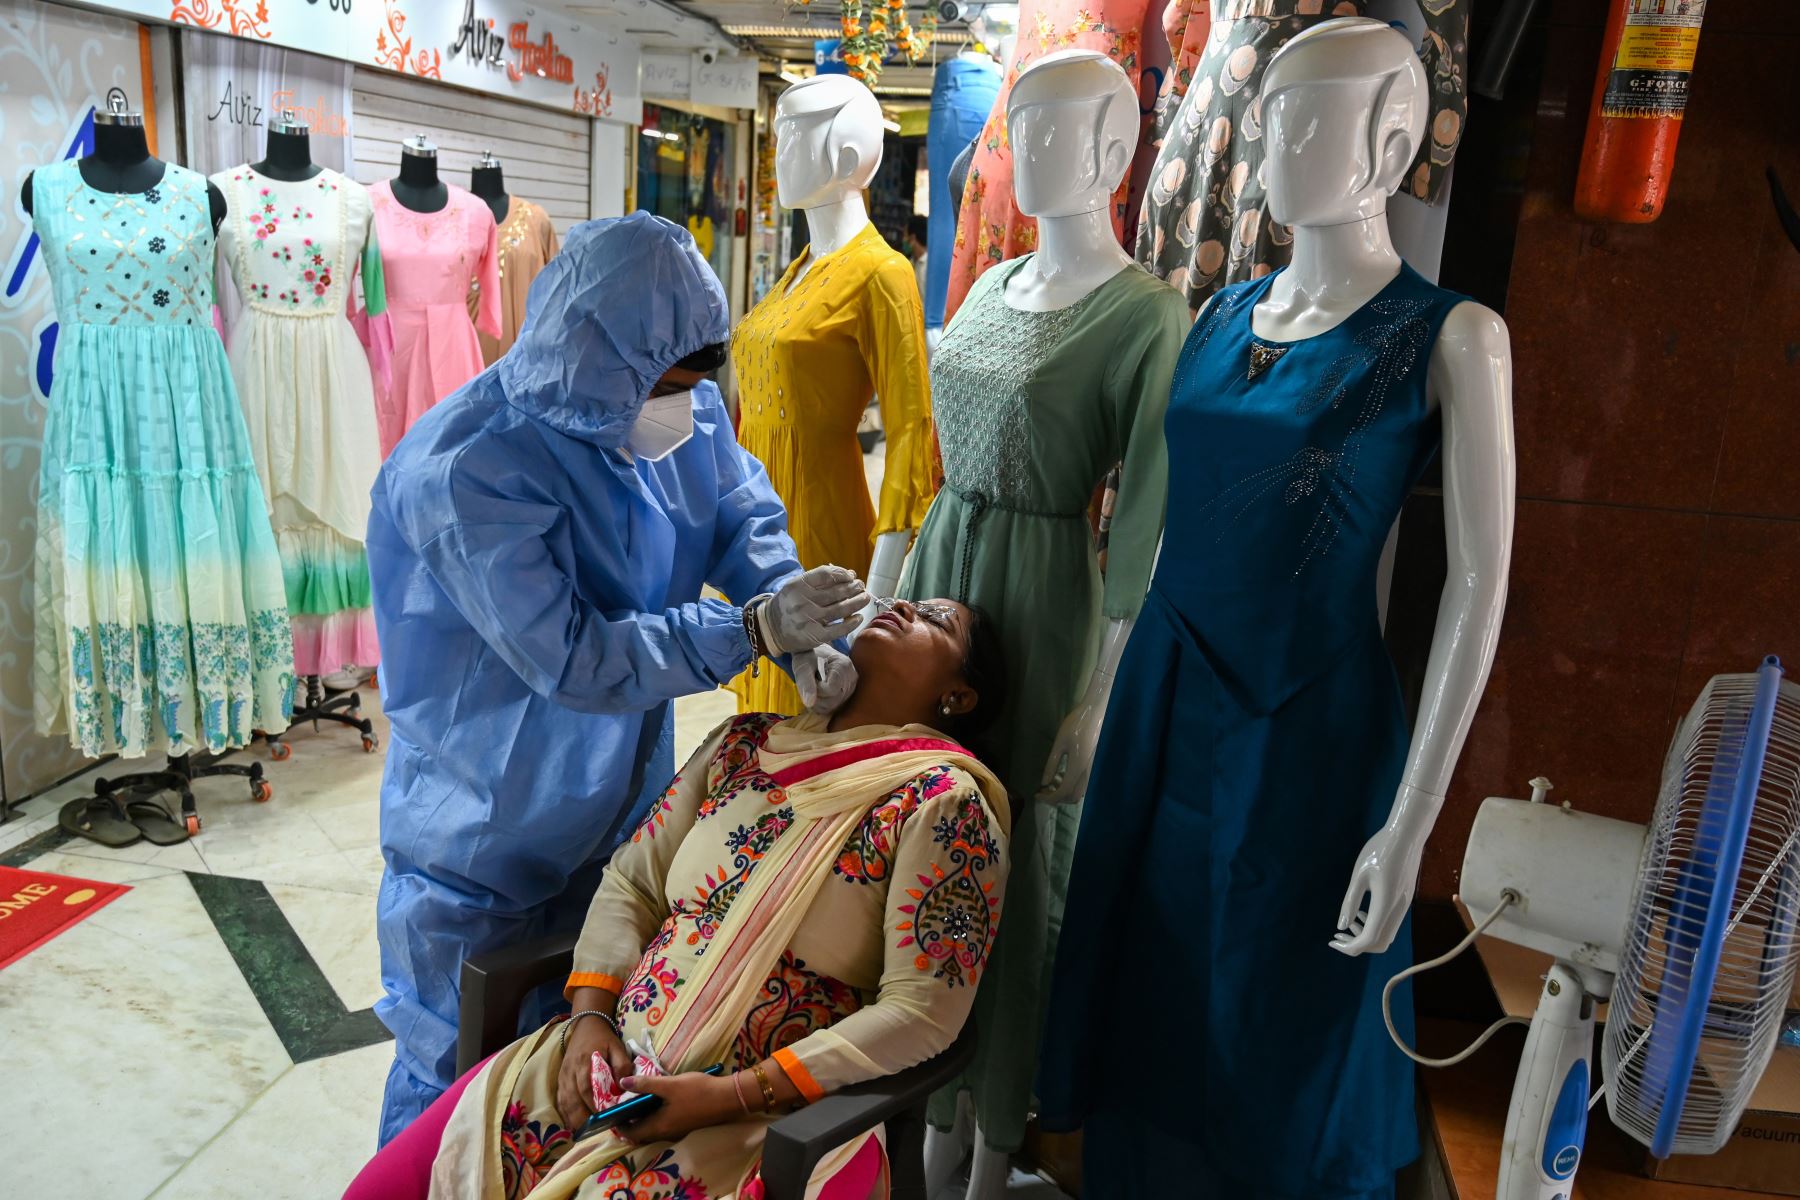 Un trabajador de la salud que usa equipo de protección toma una muestra de hisopo de una mujer durante un examen médico del coronavirus  en un mercado mayorista de ropa en Mumbai. Los casos de coronavirus en India superaron los nueve millones.
Foto: AFP